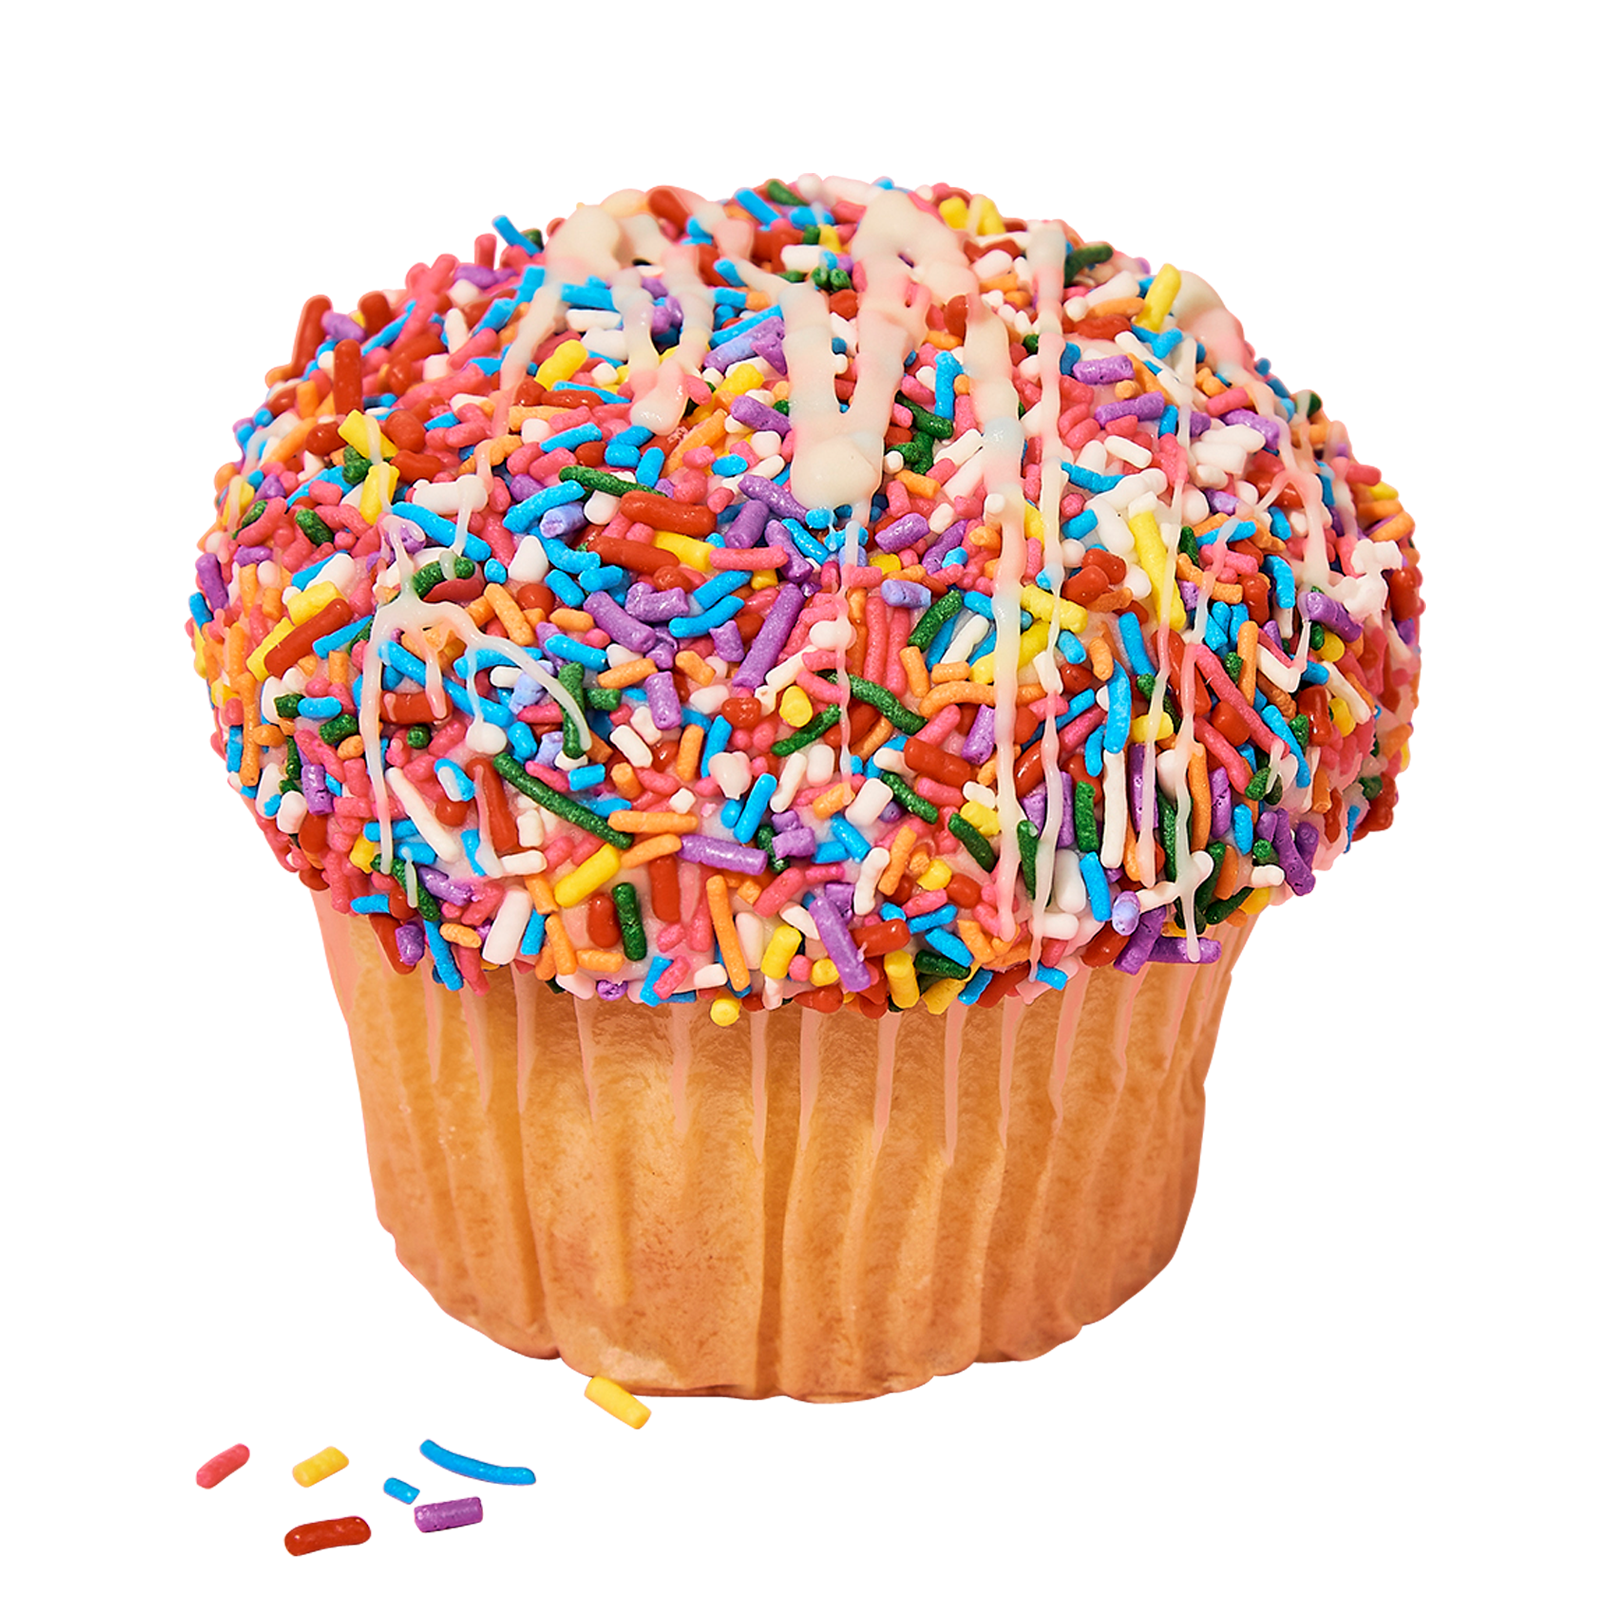 CRUMBS Signature Birthday Cake Cupcakes - 2ct